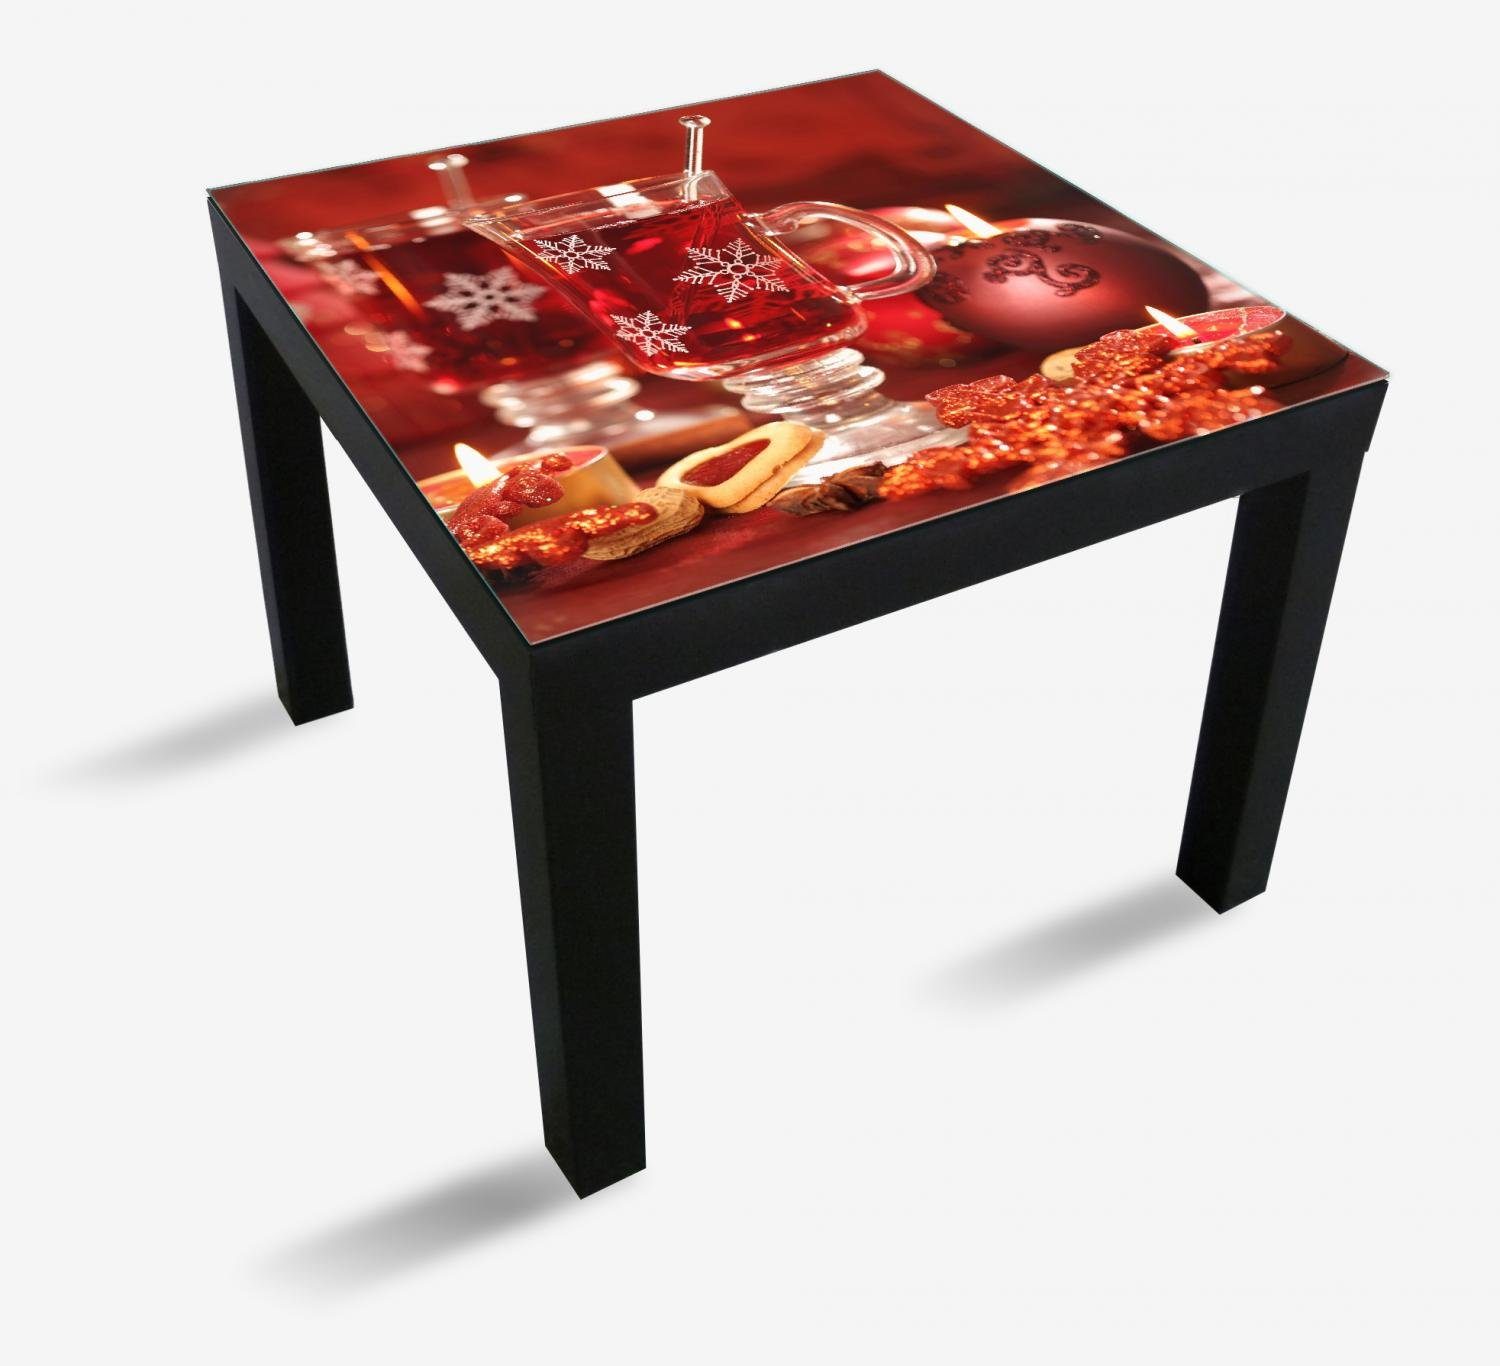 Wallario Tischplatte Heißer Winterpunsch mit Kerzen (1 St), für Ikea Lack Tisch geeignet